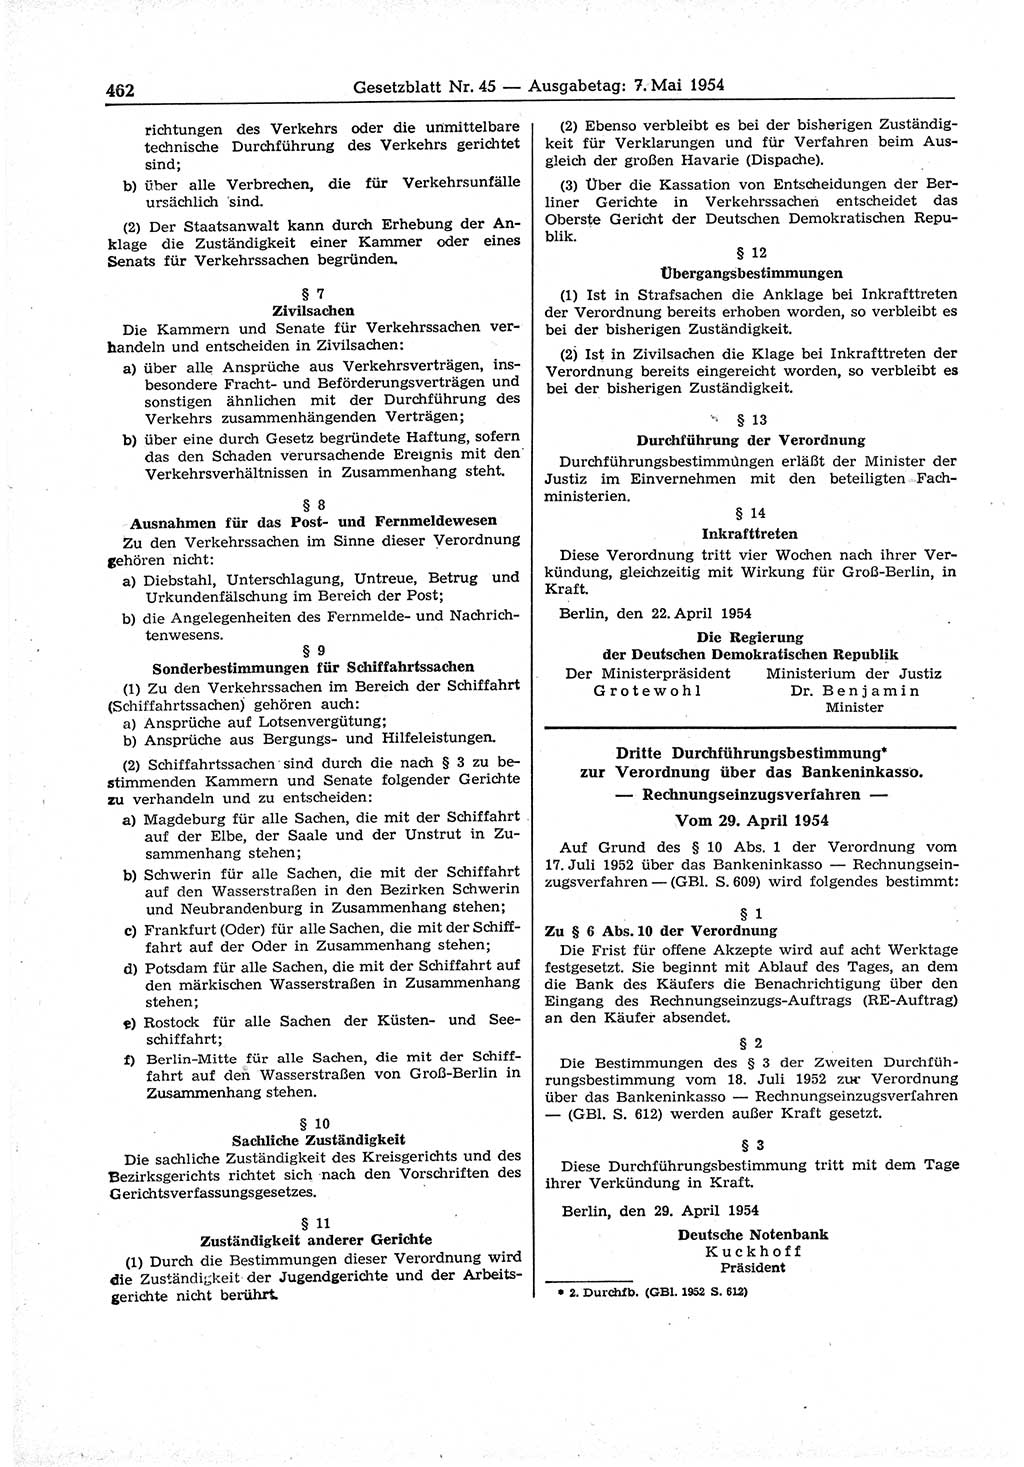 Gesetzblatt (GBl.) der Deutschen Demokratischen Republik (DDR) 1954, Seite 462 (GBl. DDR 1954, S. 462)